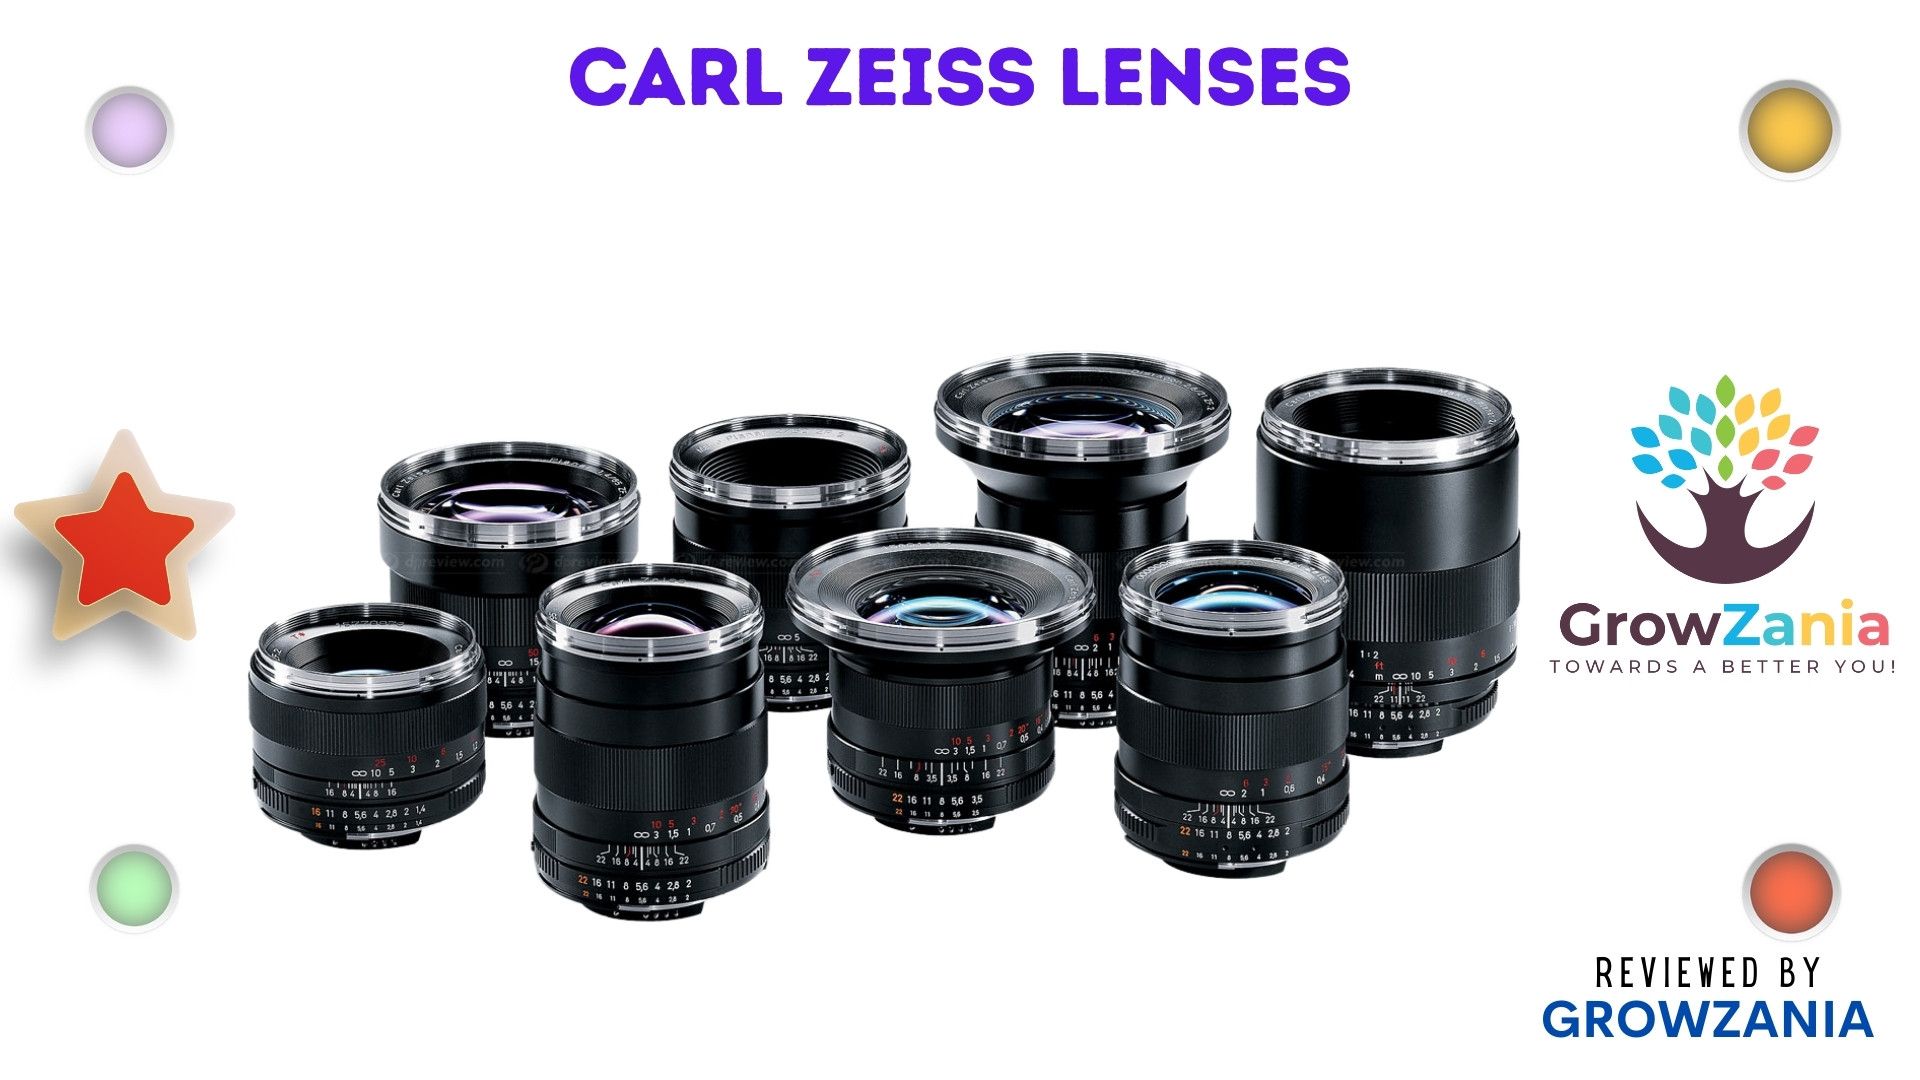 Carl Zeiss Lenses